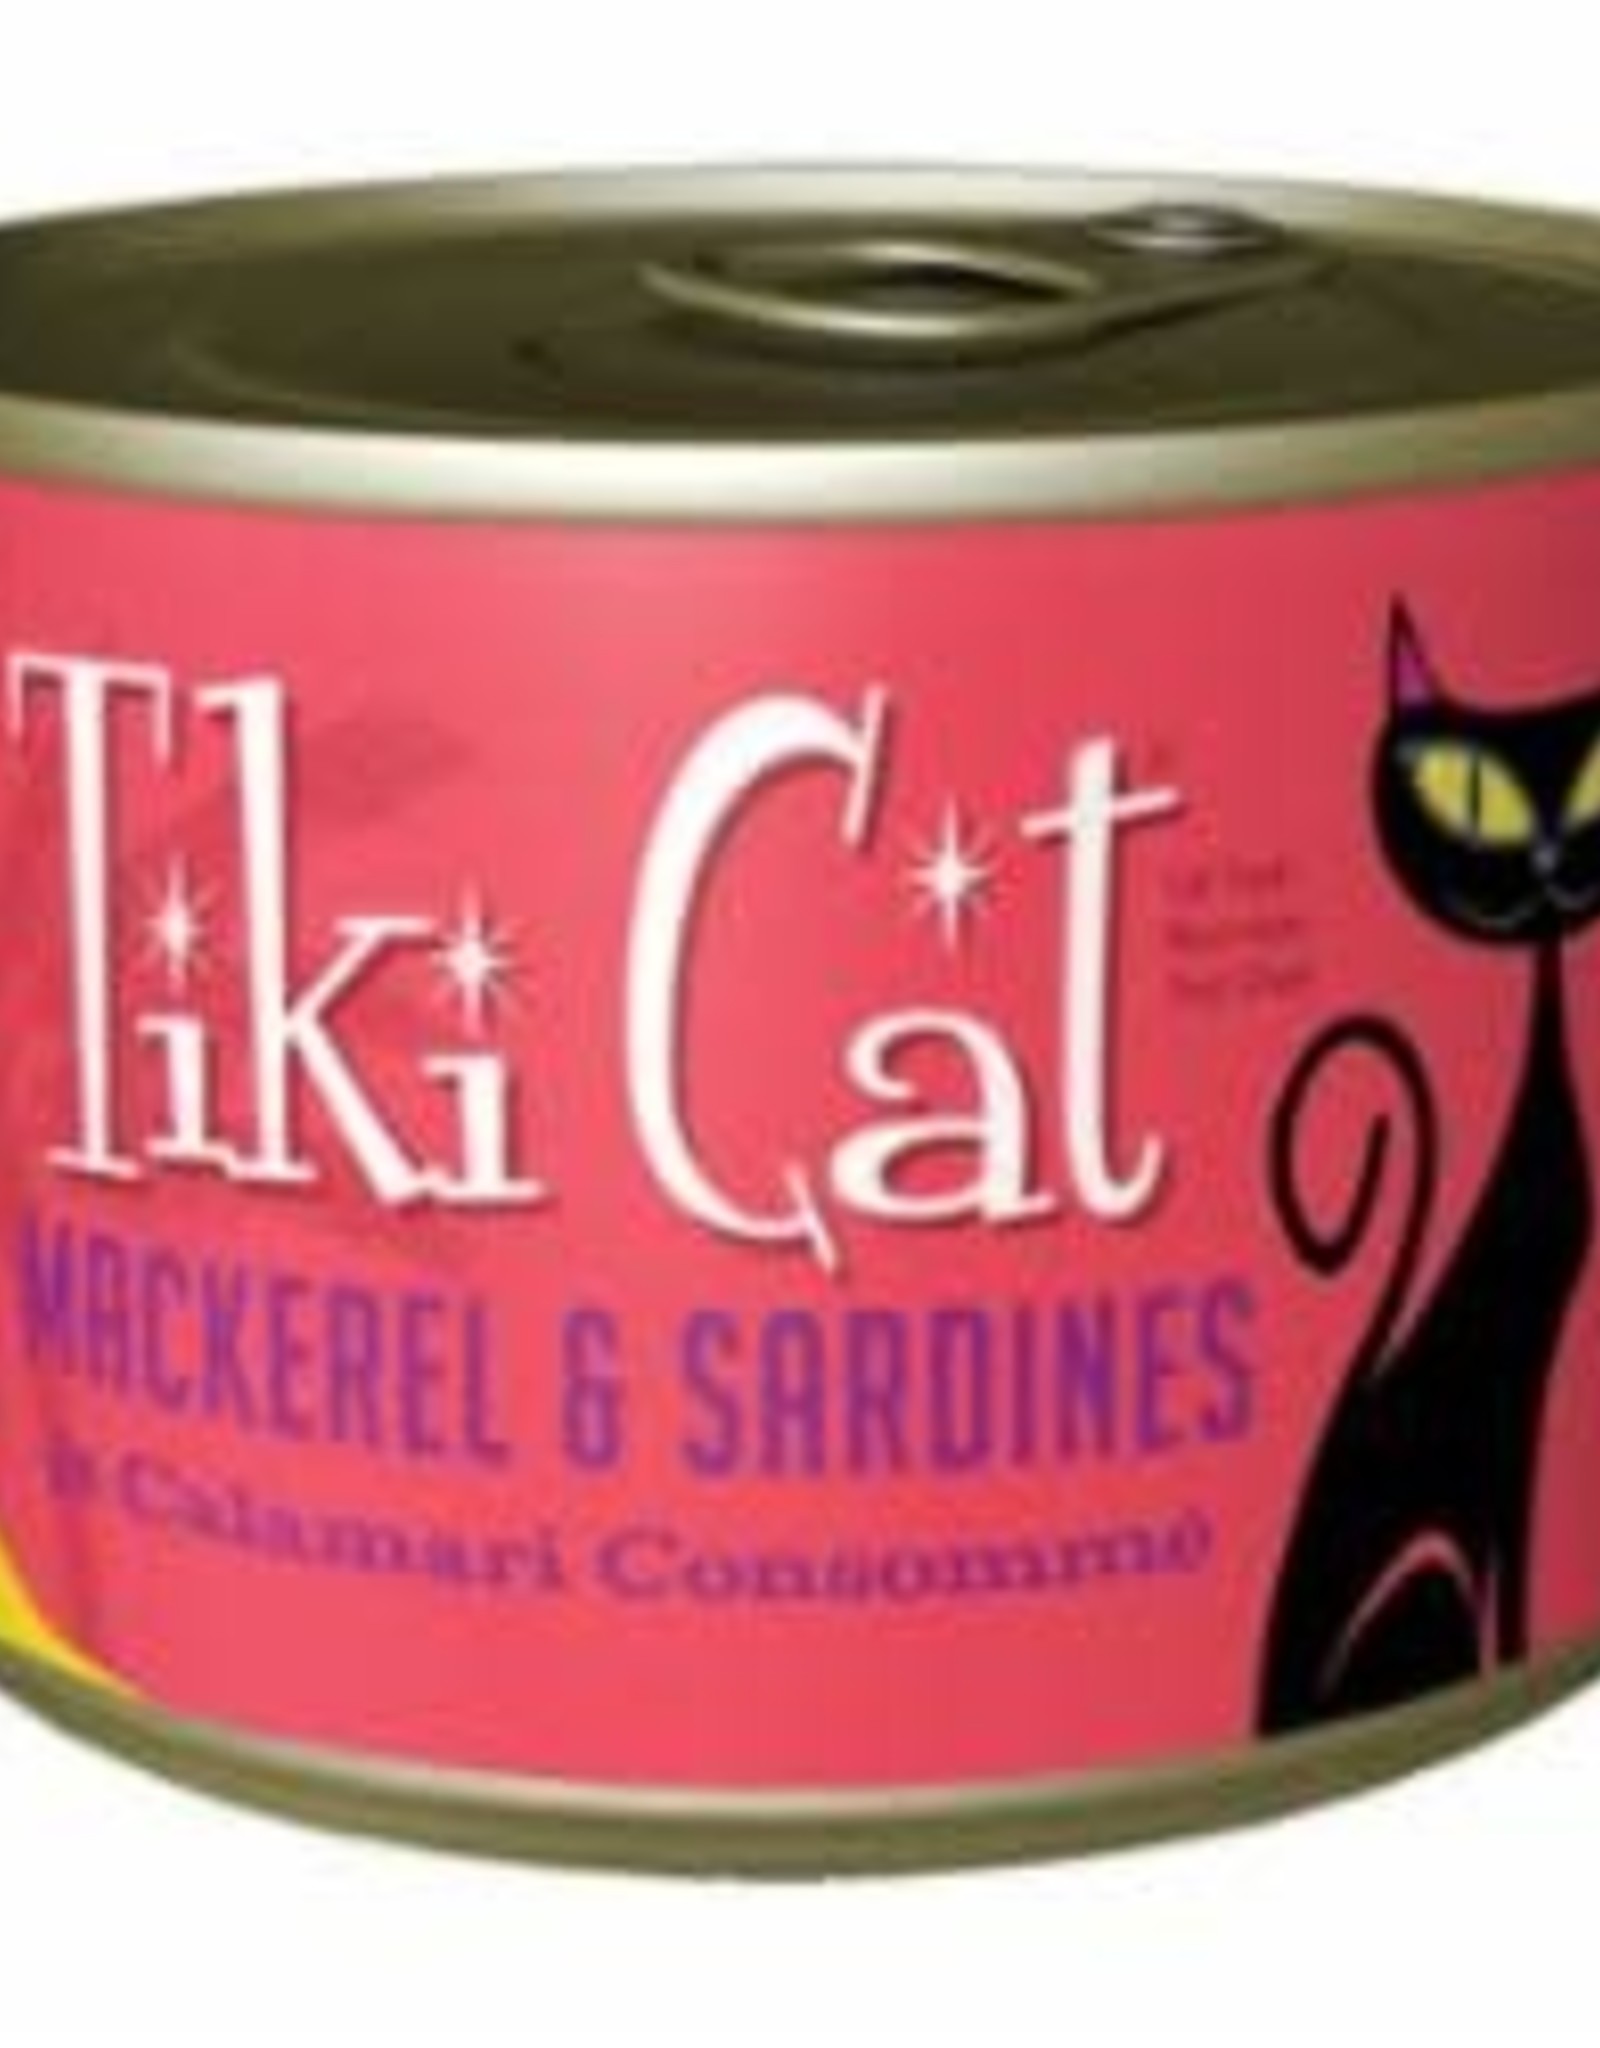 Tiki Cat Tiki Cat Grill Can GF Mackerel Sardine Calamari Makaha 6 oz 8/Case